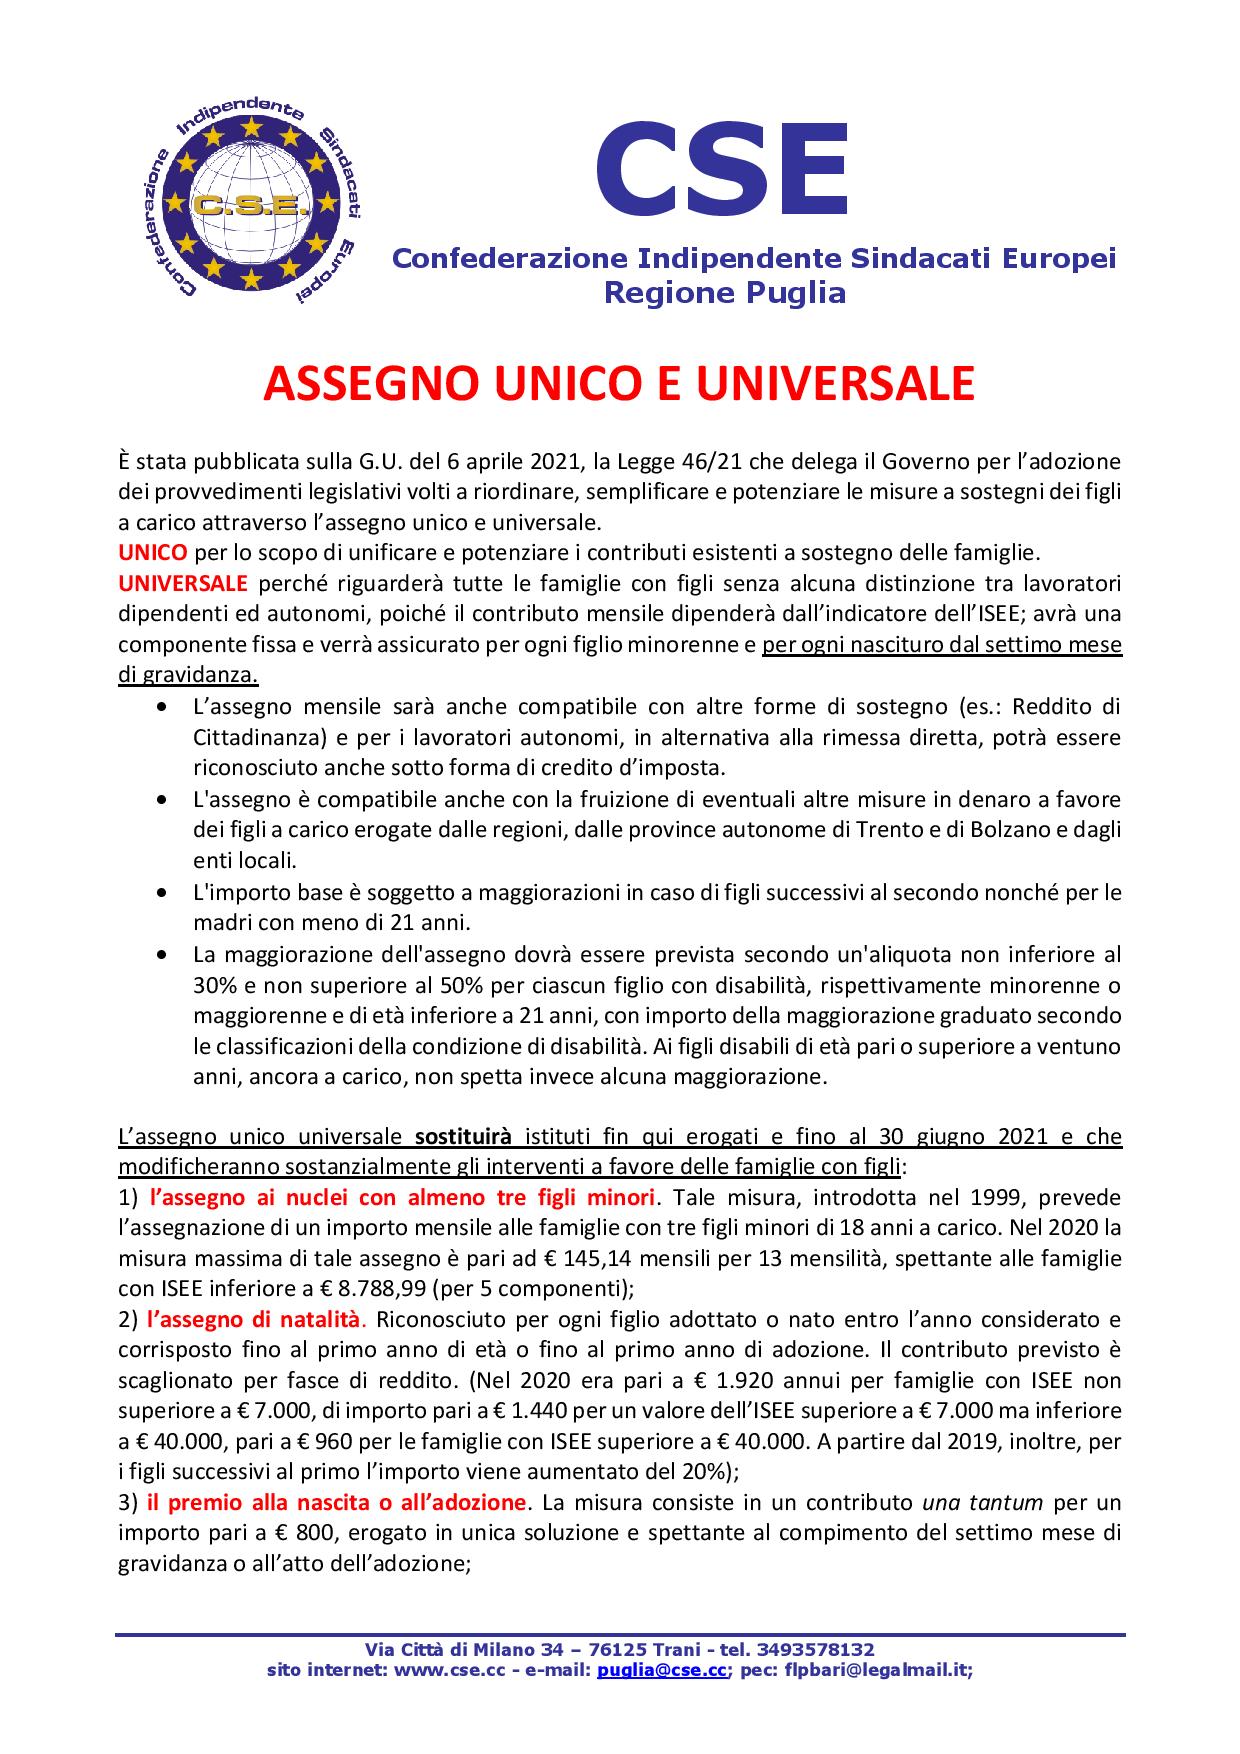 ASSEGNO UNICO E UNIVERSALE page 001